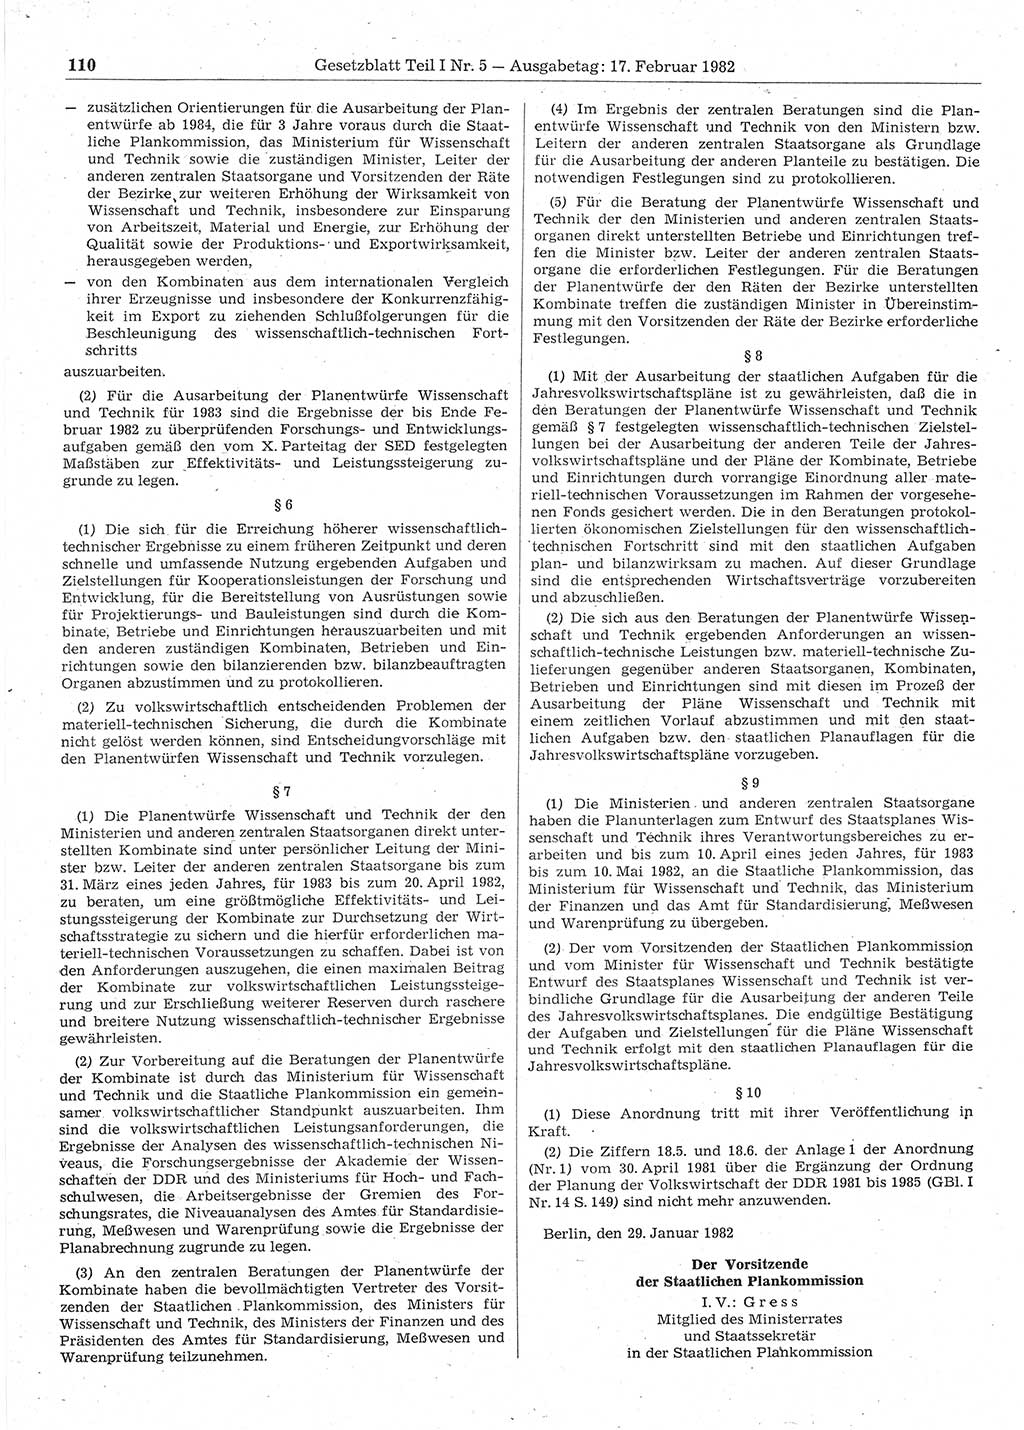 Gesetzblatt (GBl.) der Deutschen Demokratischen Republik (DDR) Teil Ⅰ 1982, Seite 110 (GBl. DDR Ⅰ 1982, S. 110)